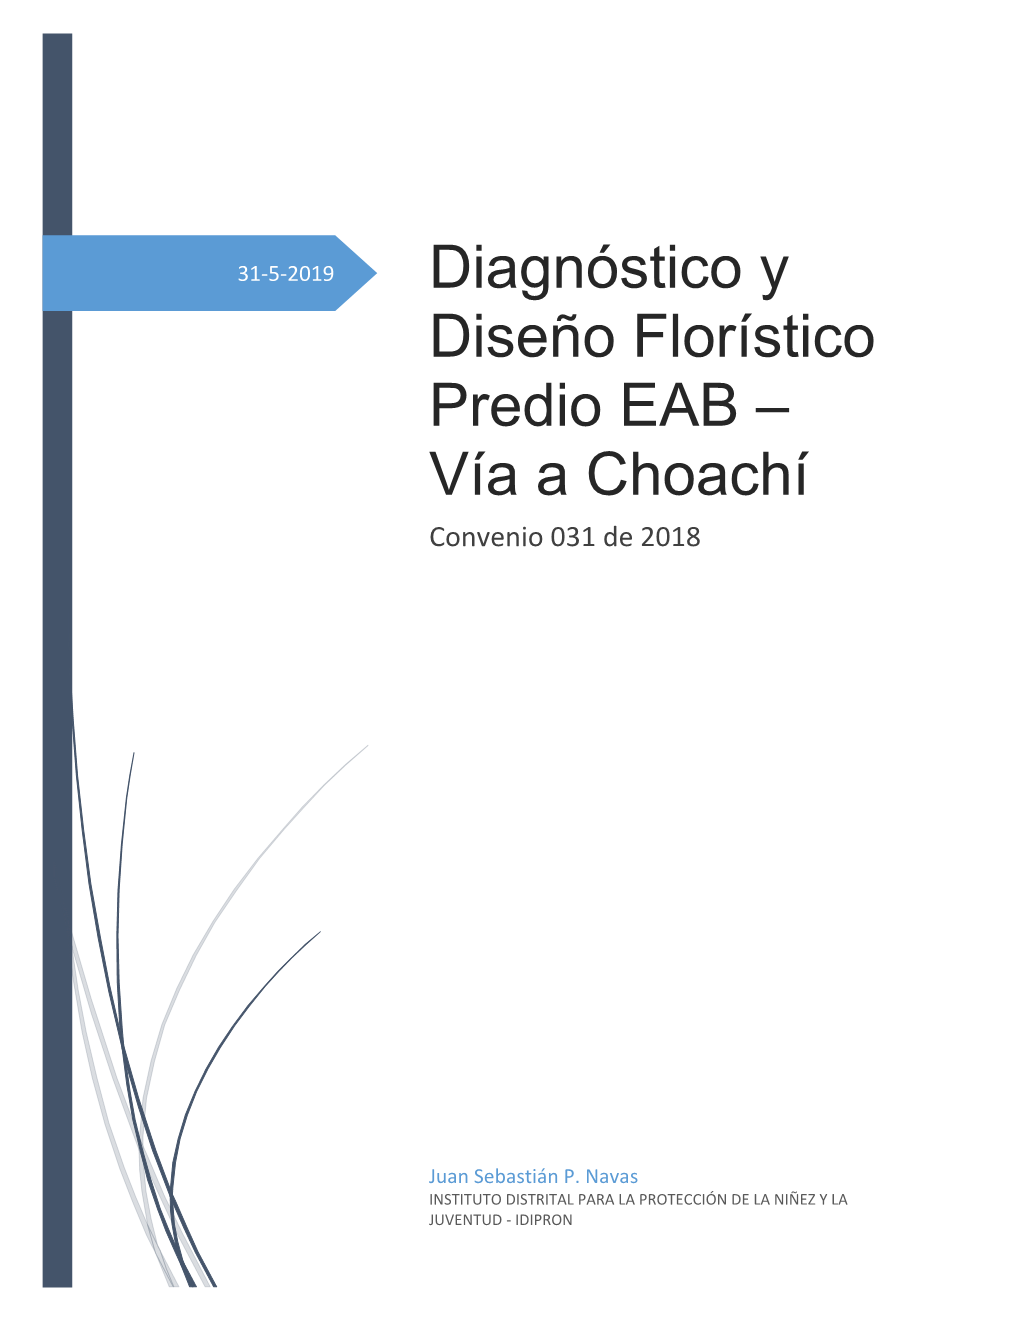 Diagnóstico Y Diseño Florístico Predio EAB – Vía a Choachí Convenio 031 De 2018